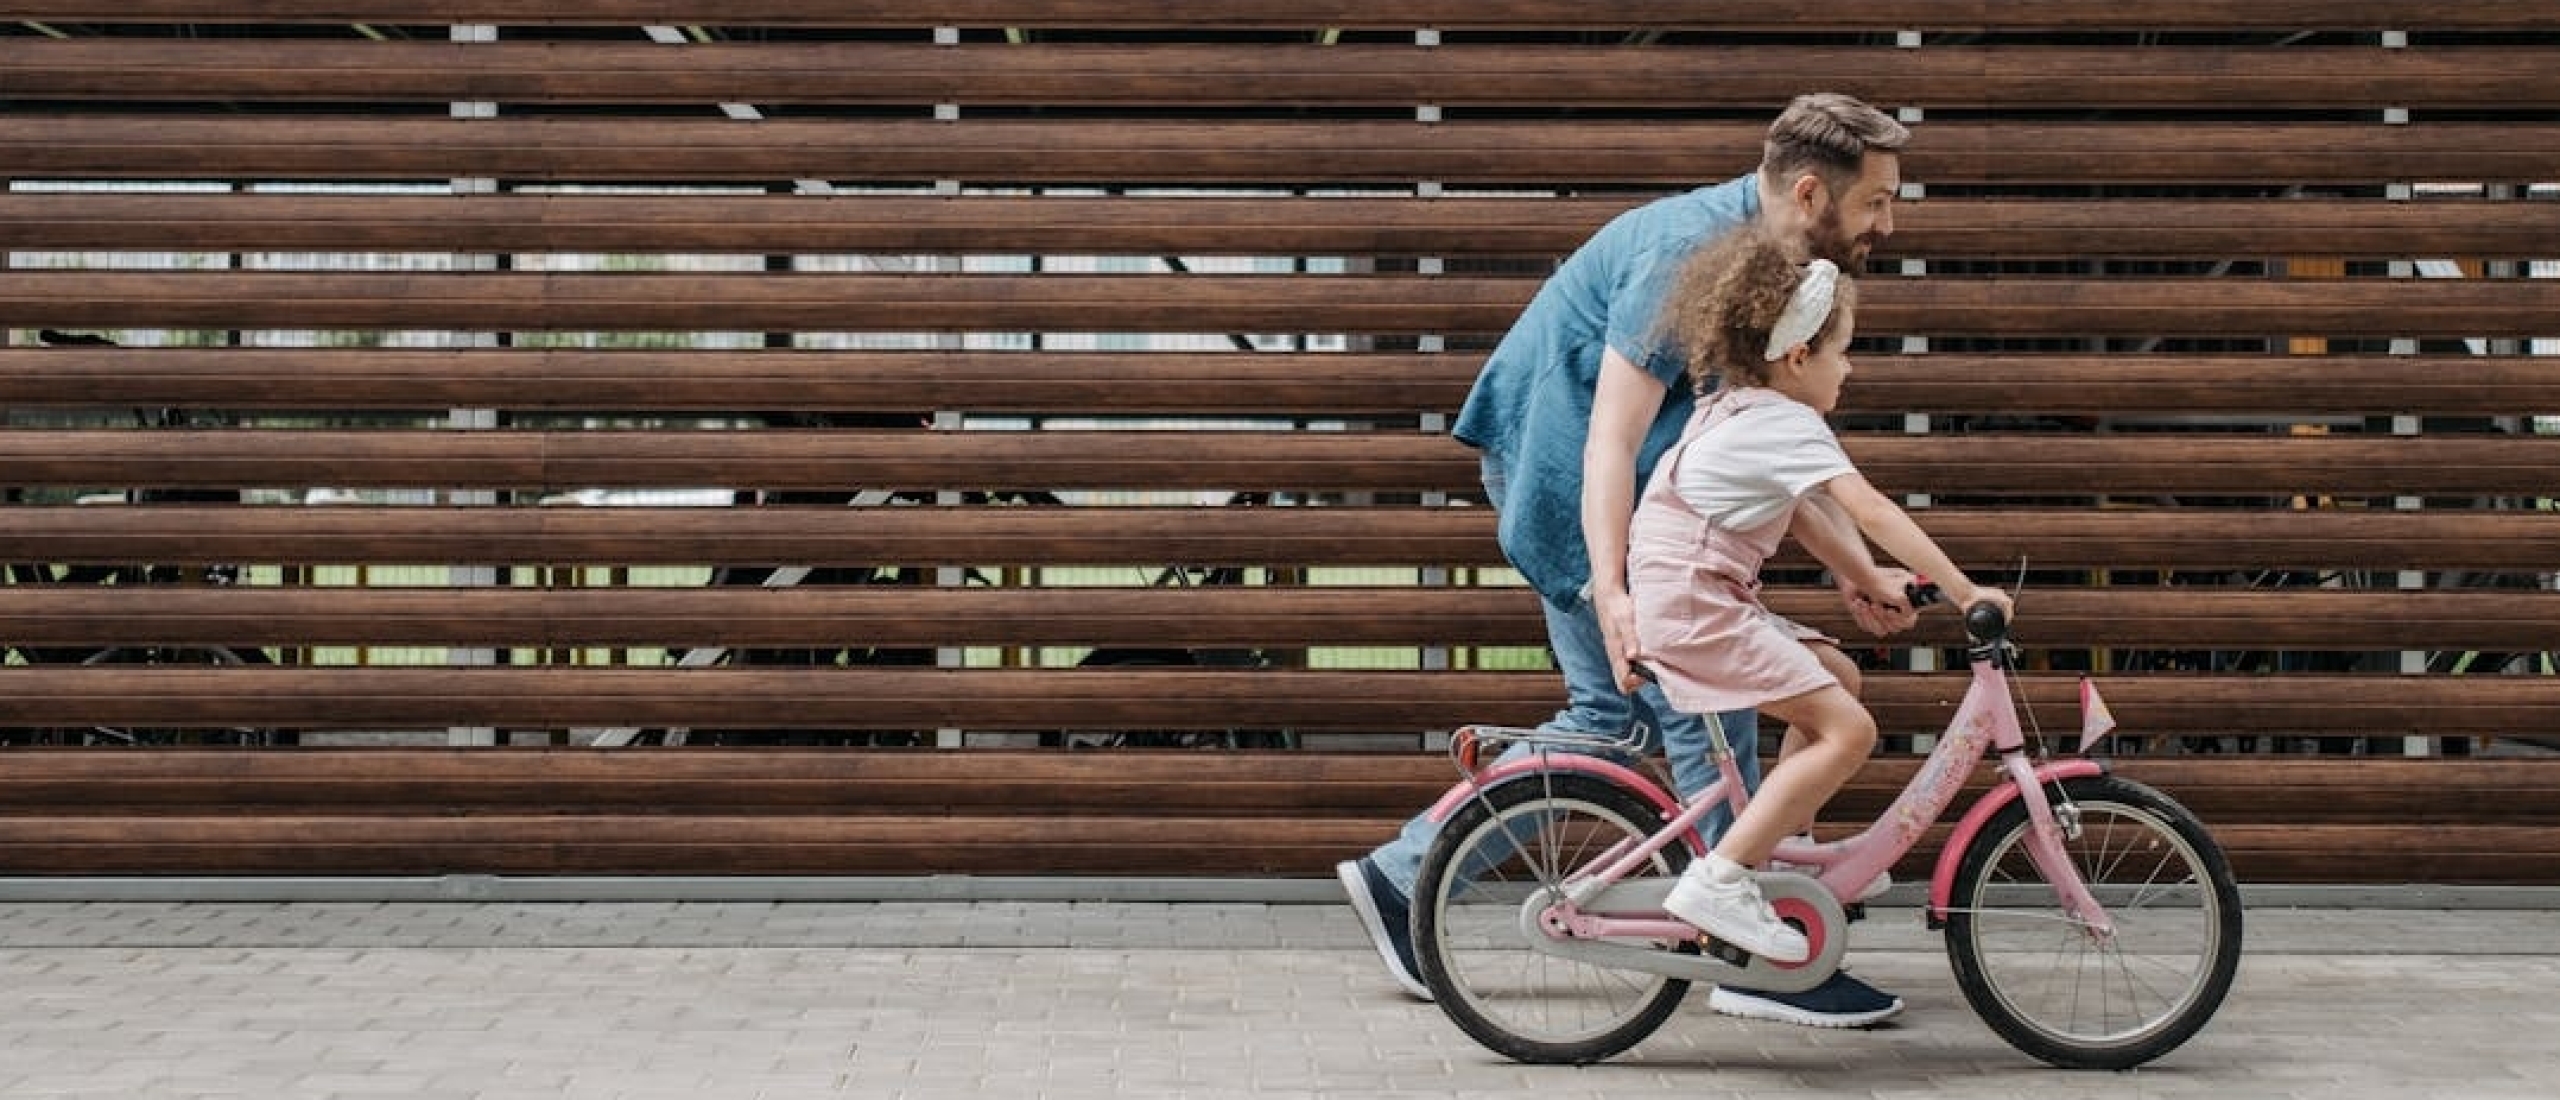 Kind leert fietsen - verband tussen lichamelijke activiteit en schoolprestaties